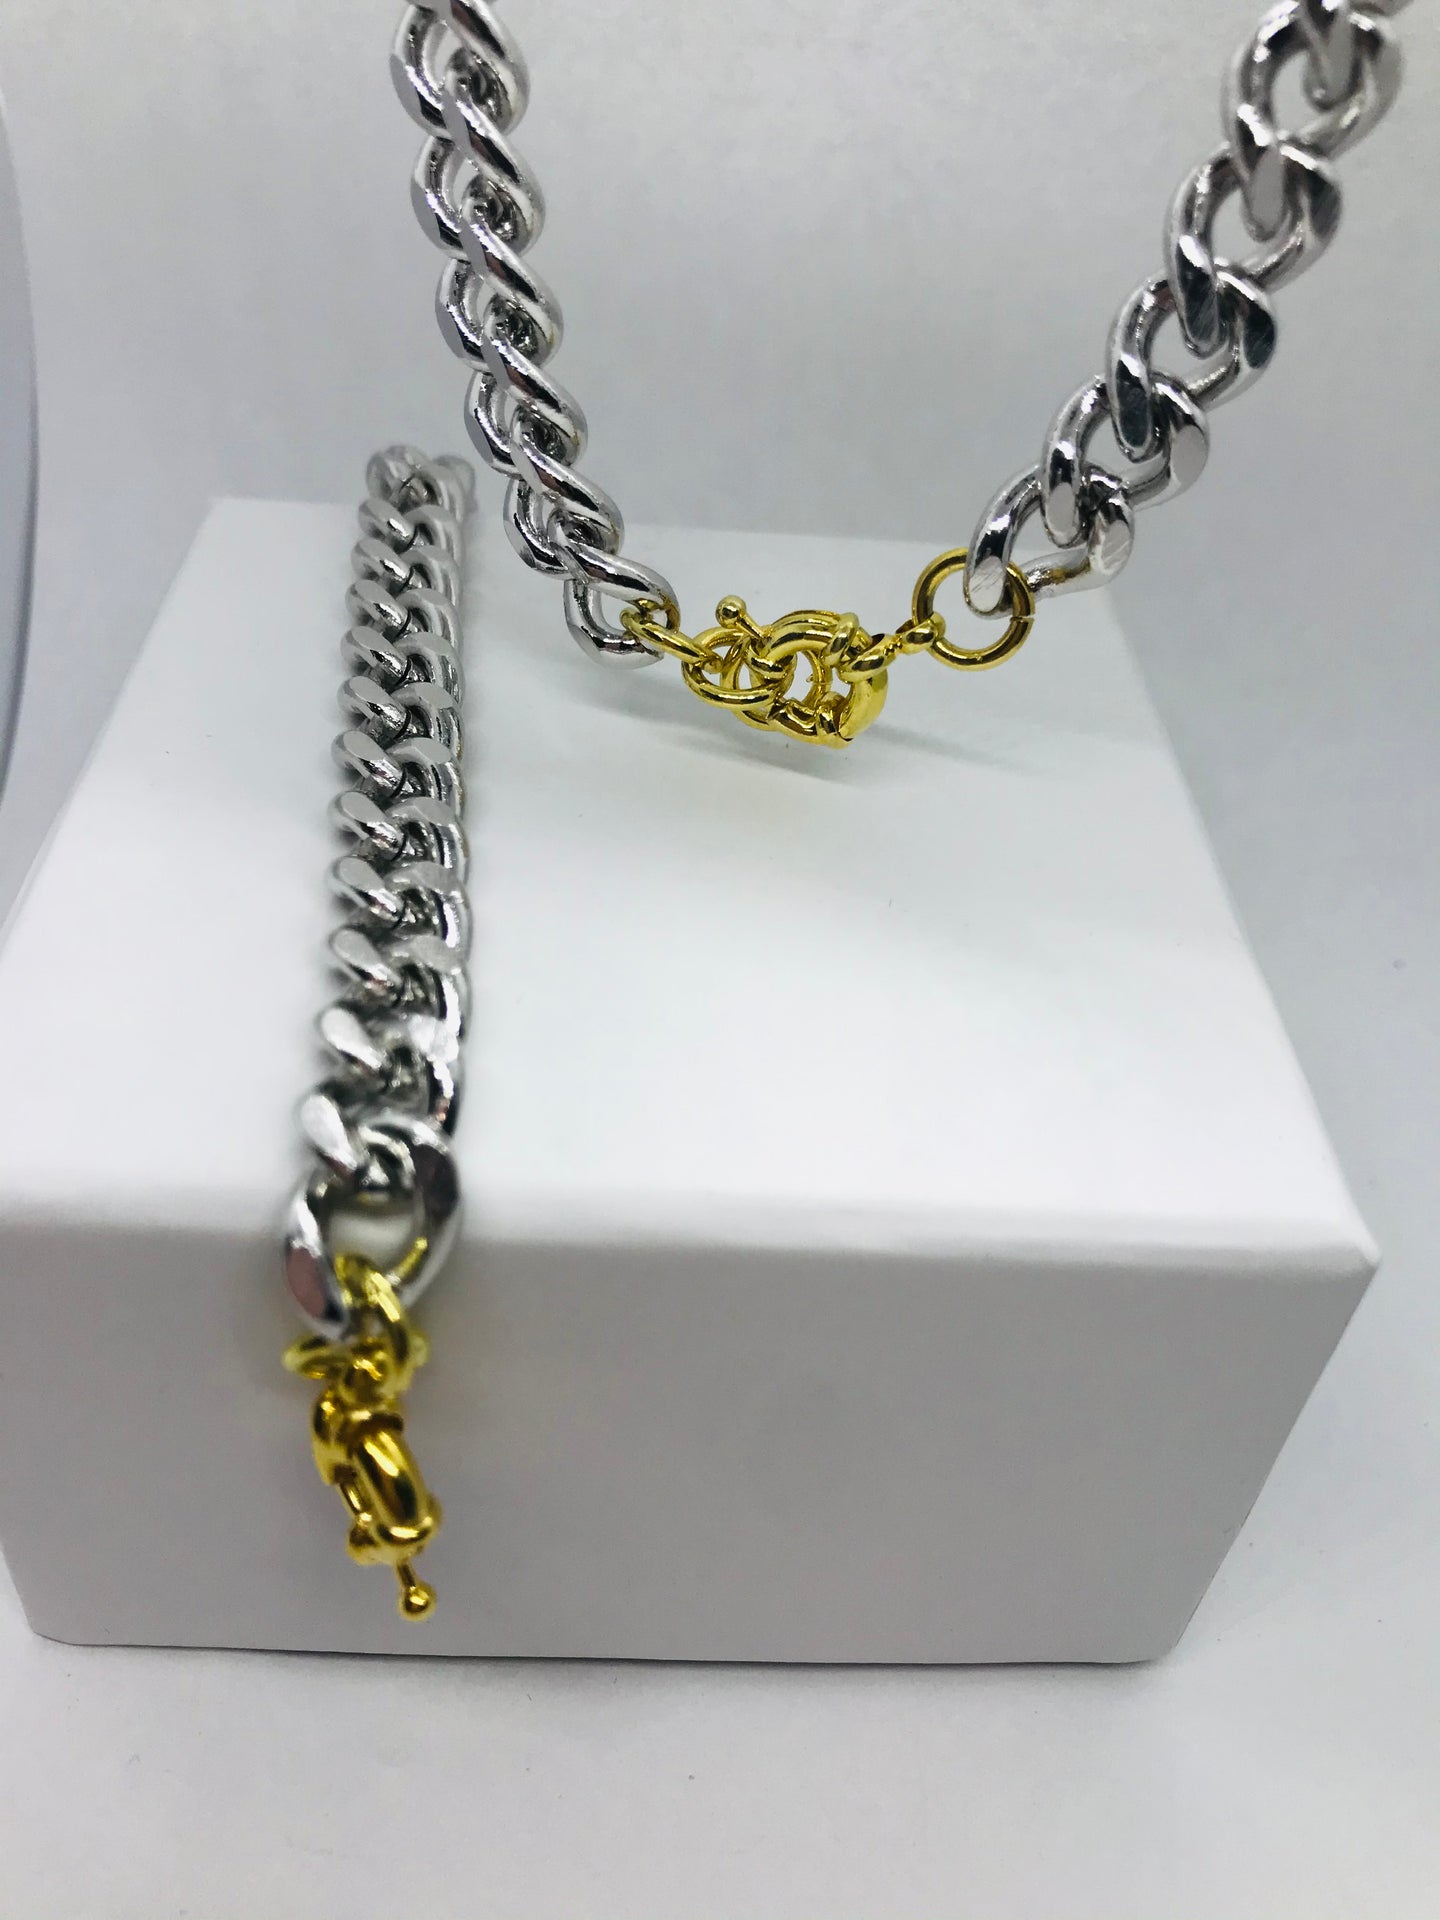 Illustrious chain link set